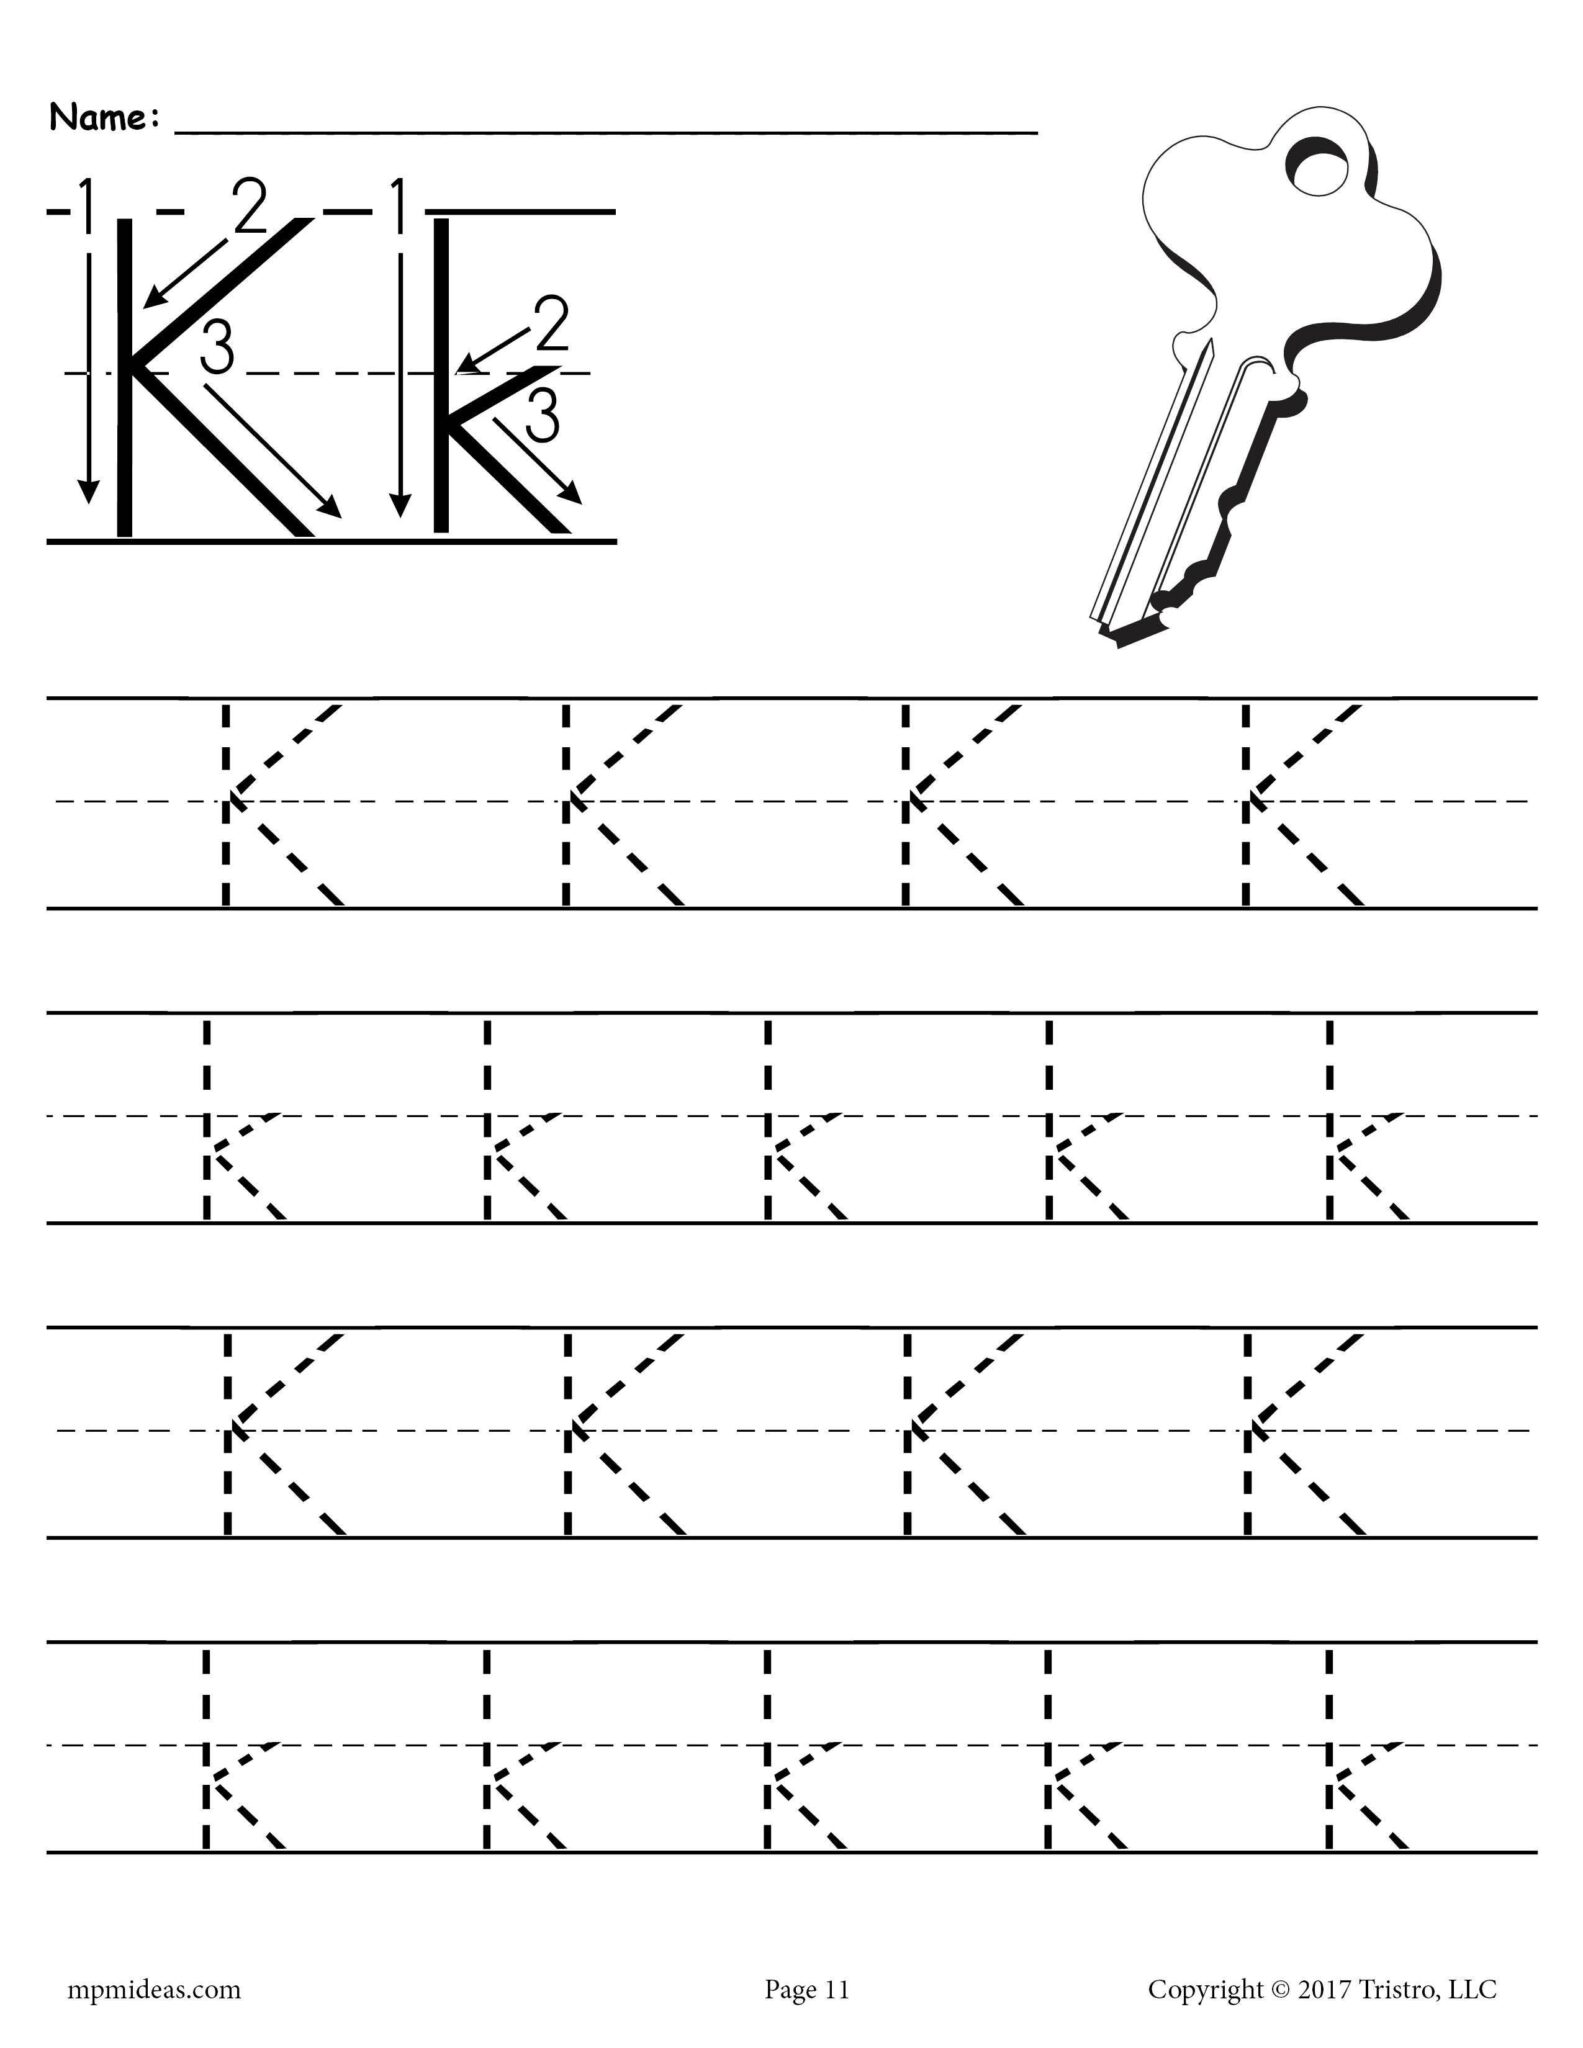 printable-letter-k-tracing-worksheet-letter-worksheets-for-preschool